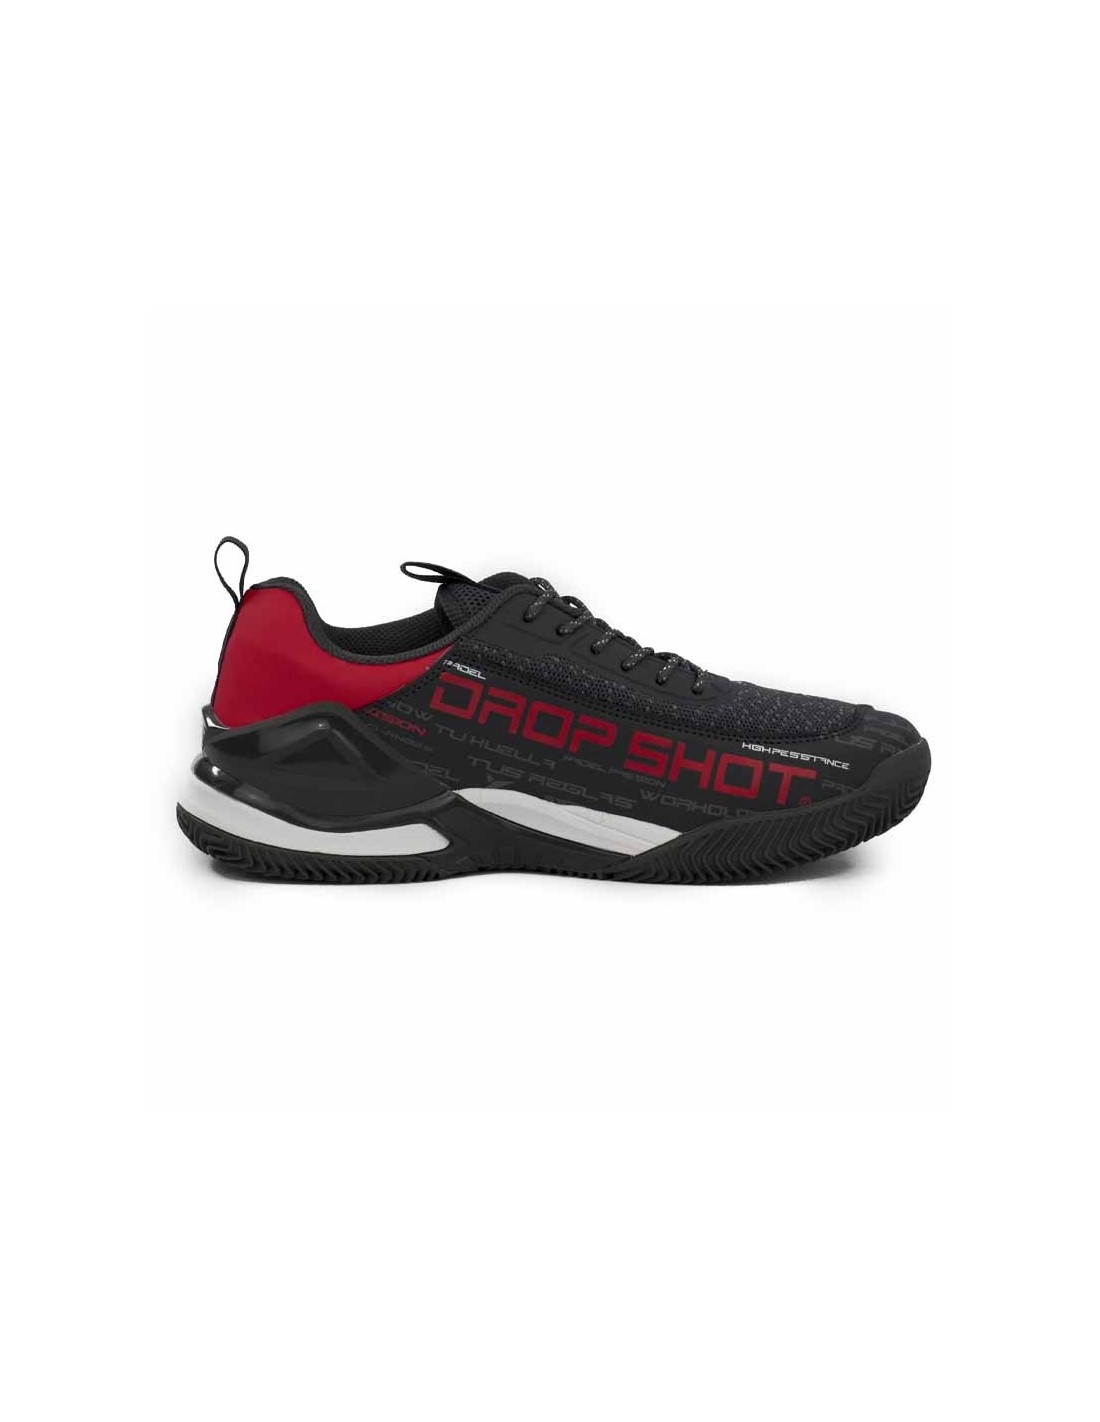 Drop Shot Veris Xt 2021 Shoes | DROP SHOT paddle shoes | Time2Padel